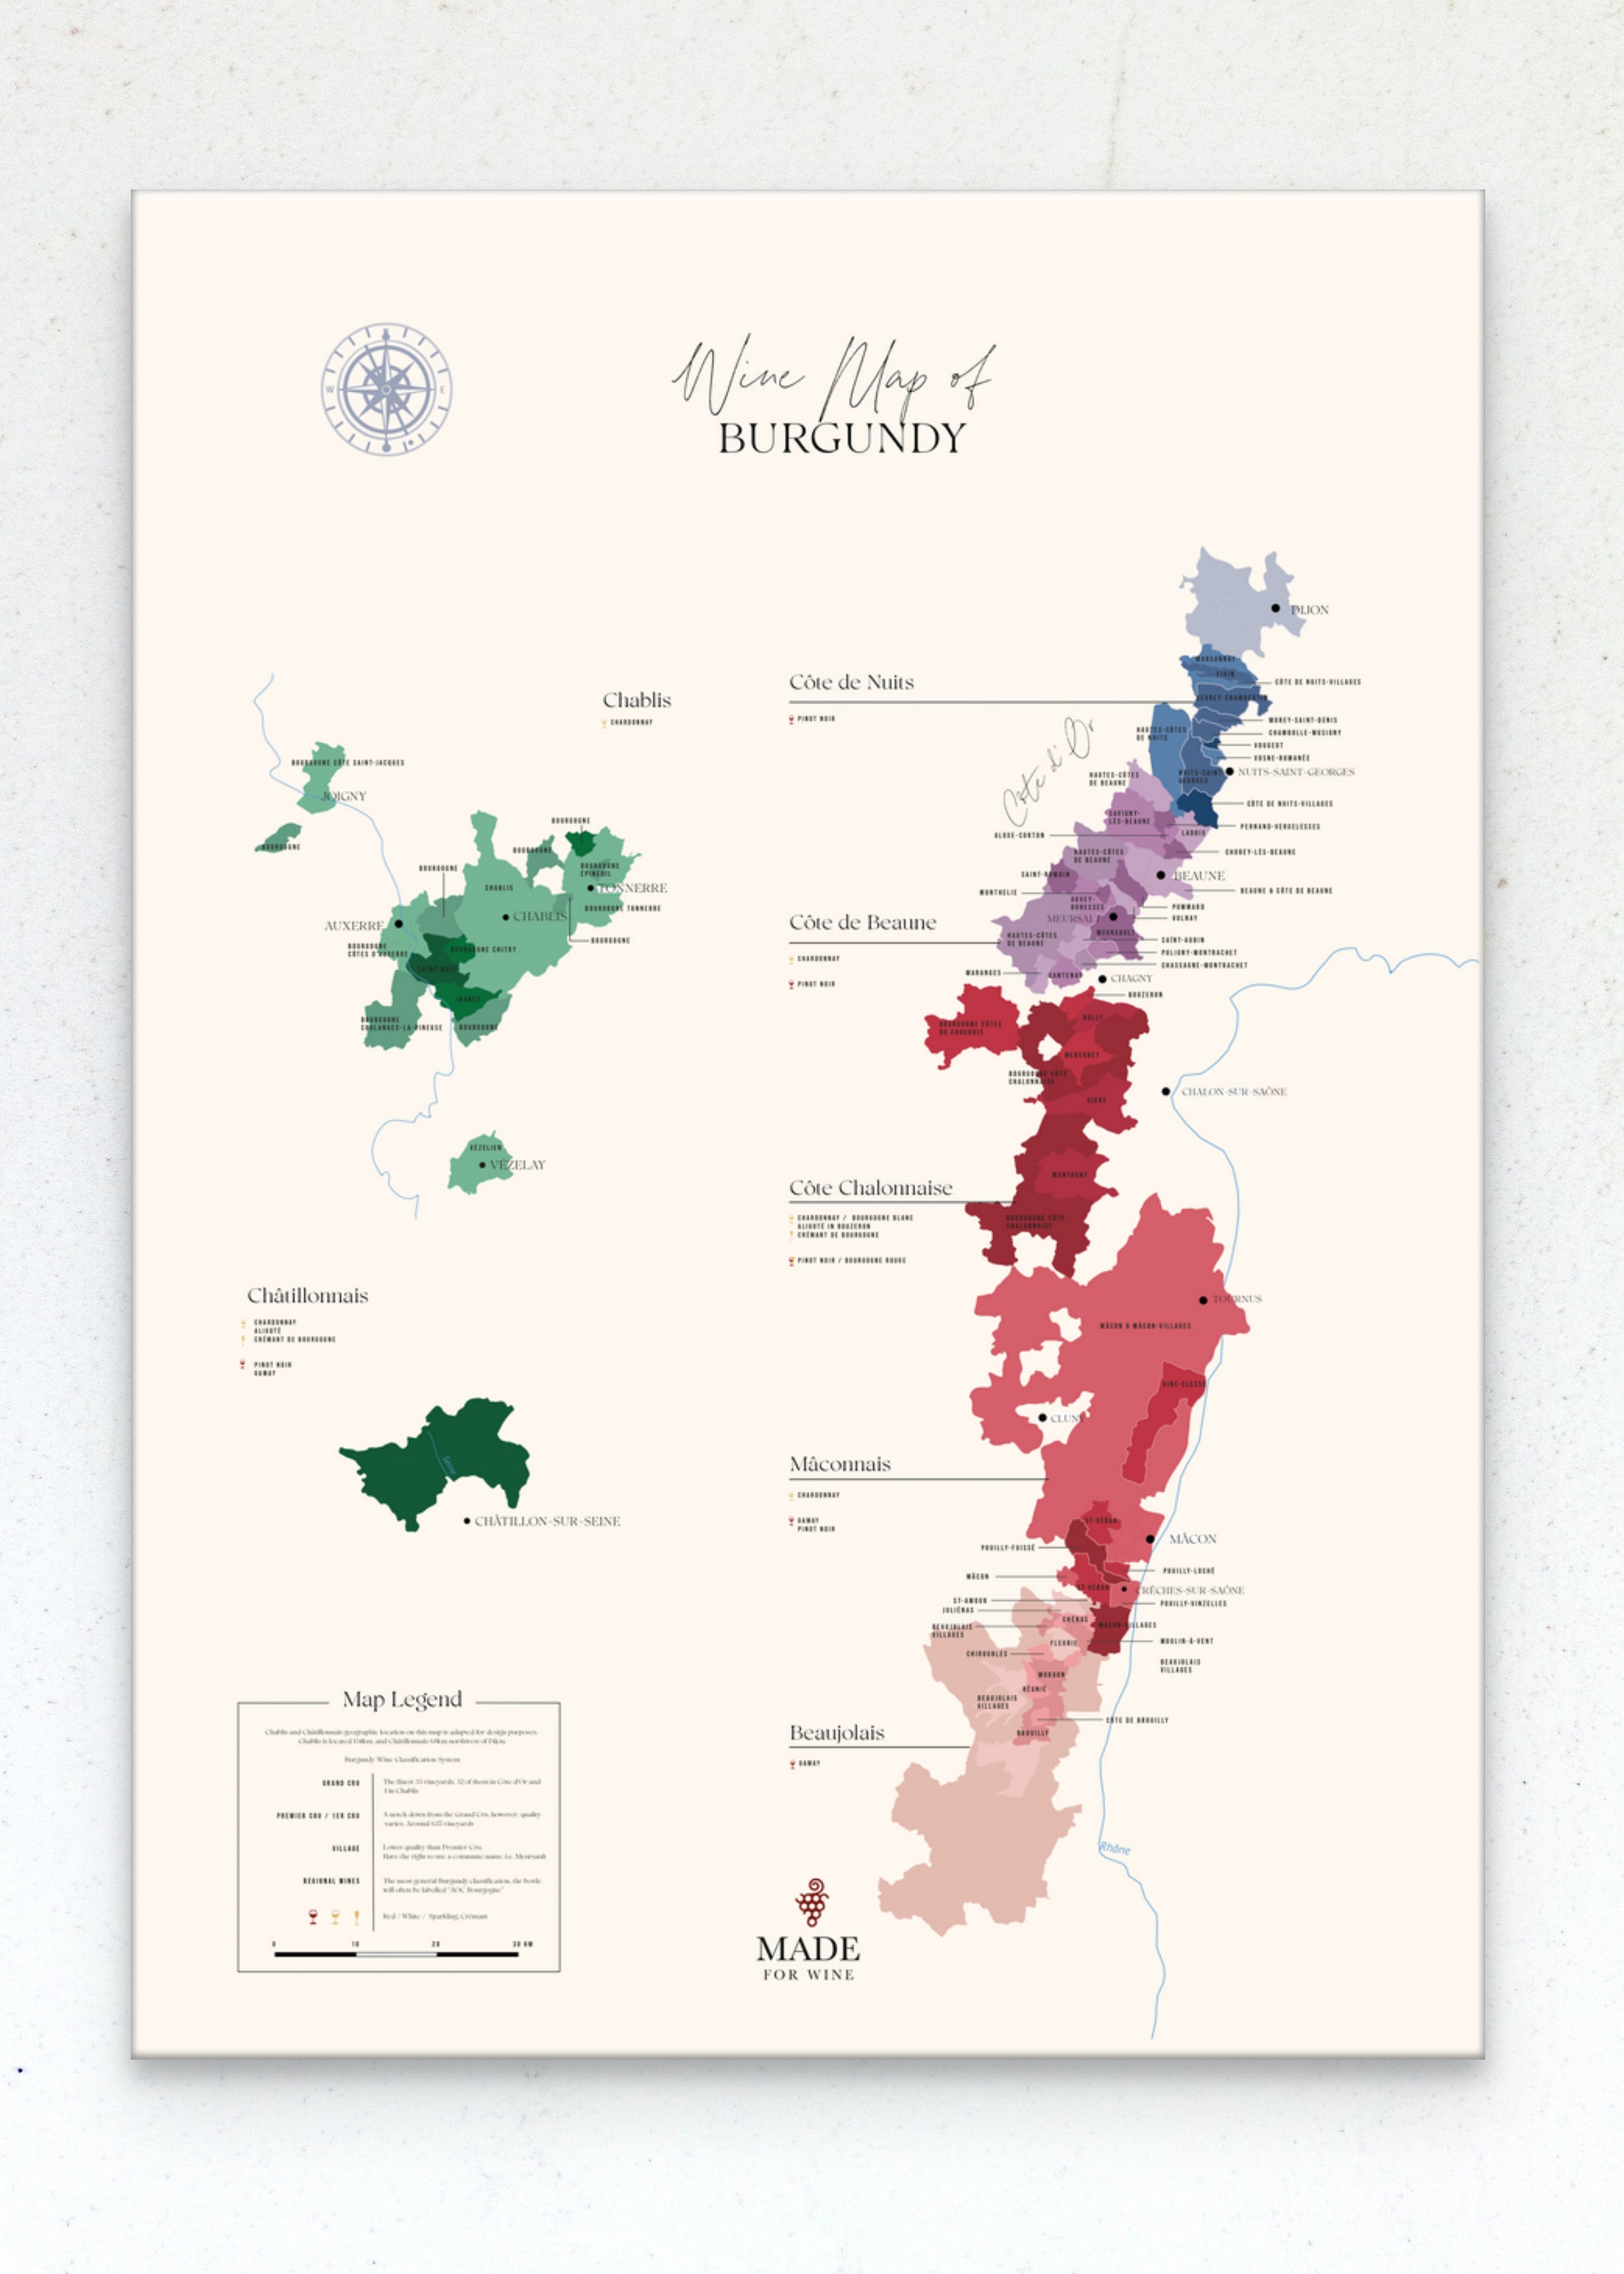 N°1 Wines of Burgundy - Wine Map